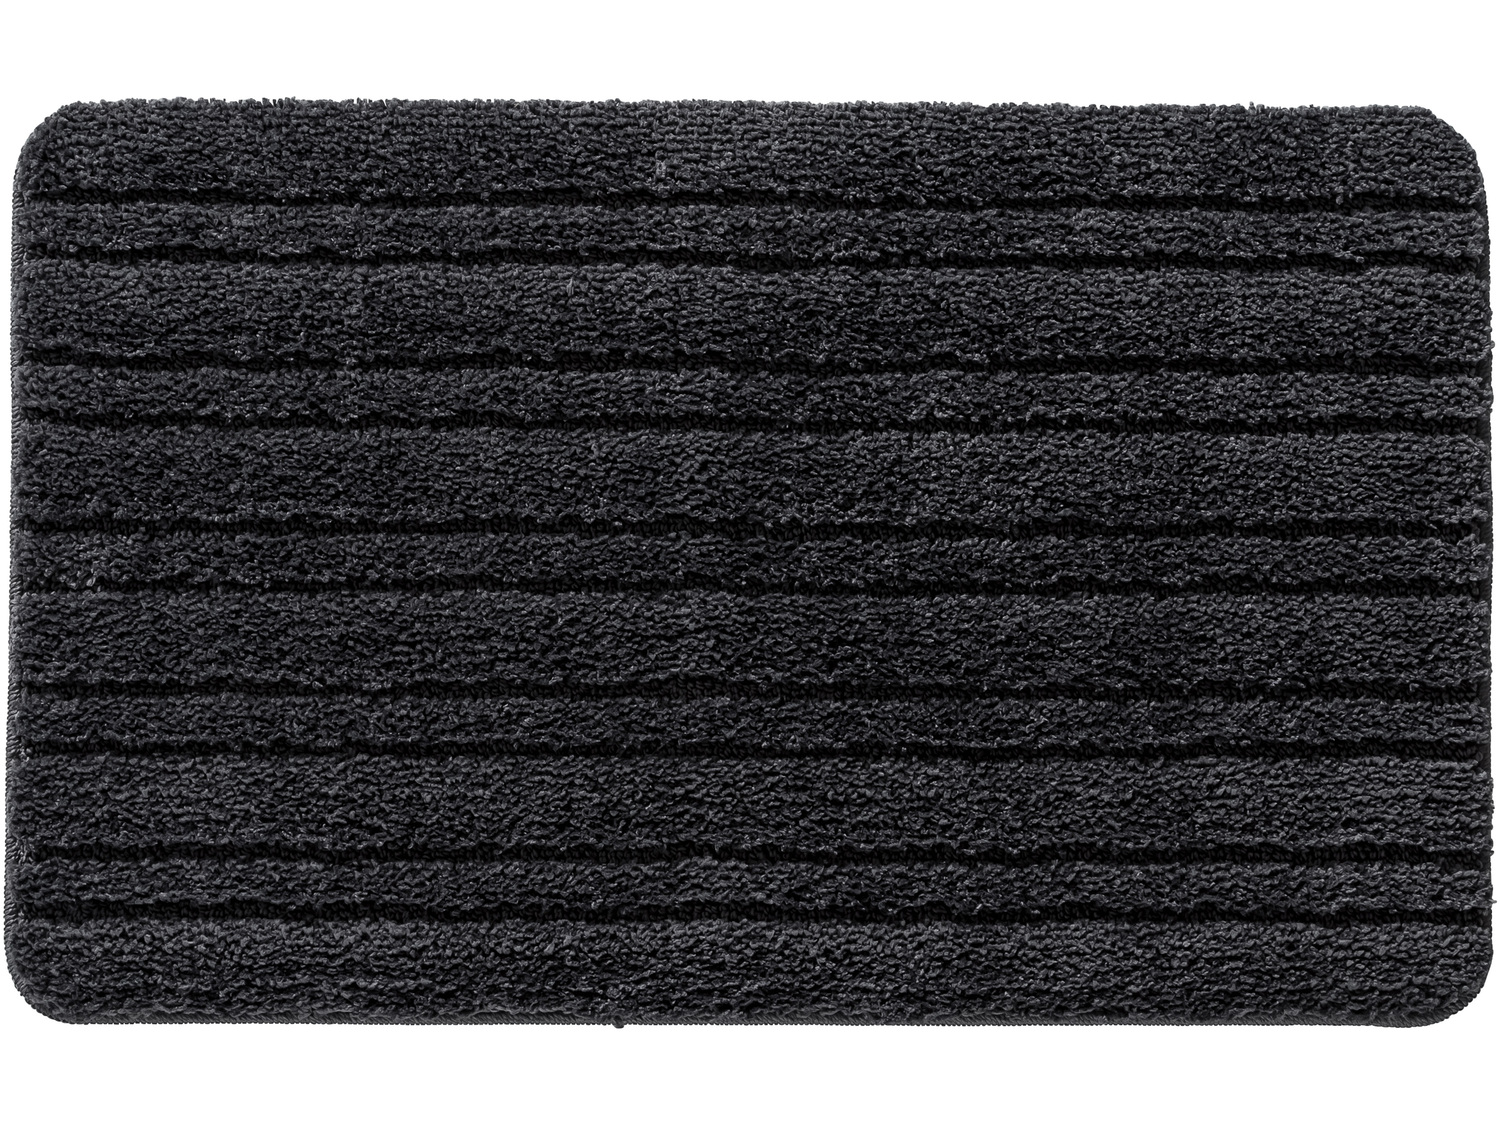 Zestaw dywaników łazienkowych Miomare, cena 29,99 PLN 
- antypoślizgowy spód
- ...